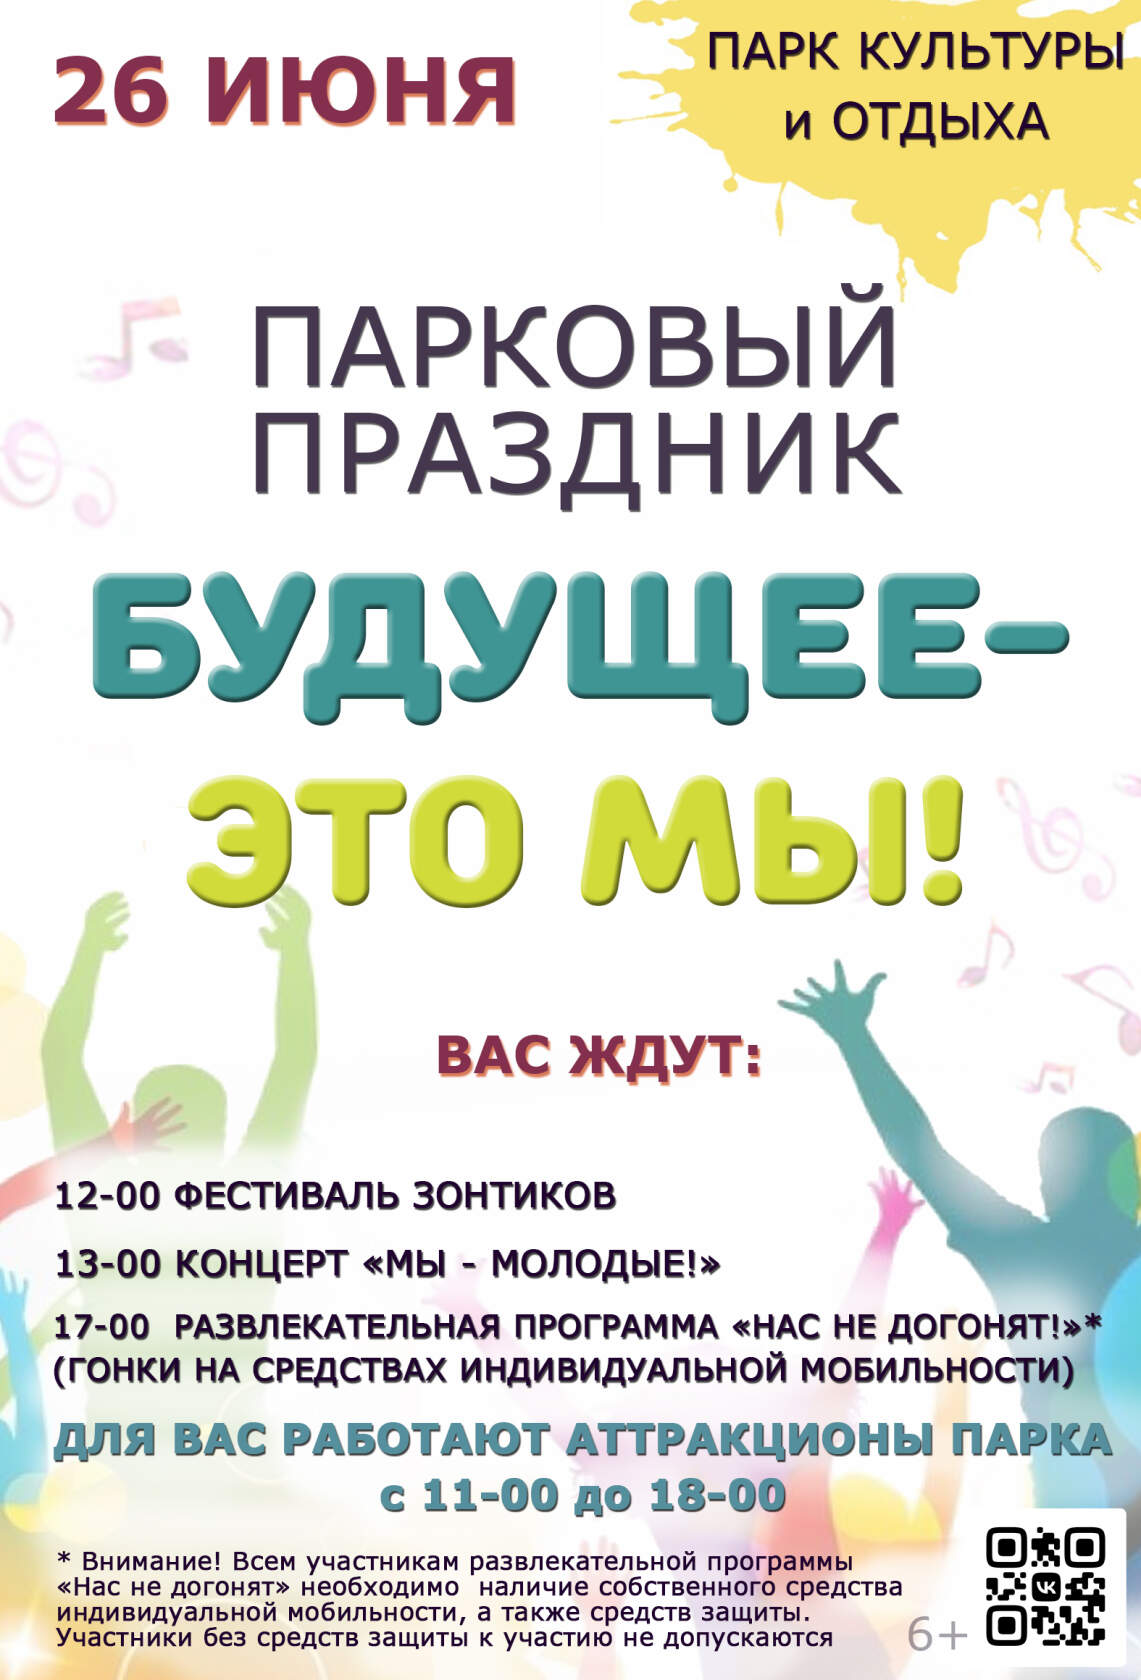 Гонки на гироскутерах, фестиваль зонтиков и много музыки: в Новозыбкове устраивают яркий День молодежи